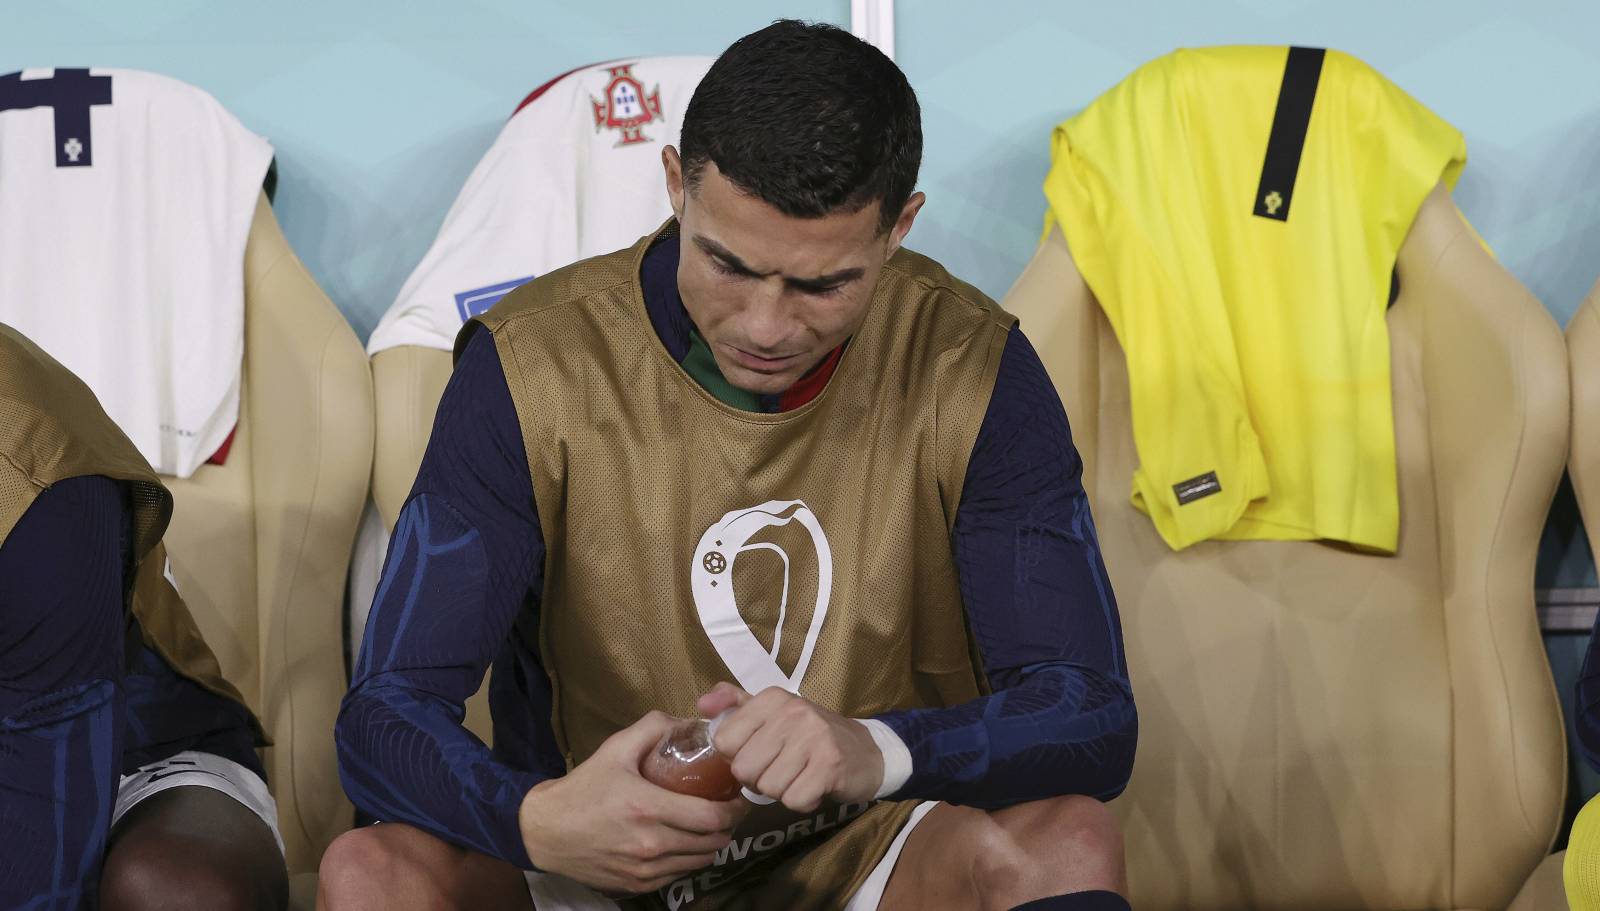 Ну всё, Роналду, давай до свидания: Сборная Марокко вышибла Португалию и стала первым в истории африканским полуфиналистом ЧМ